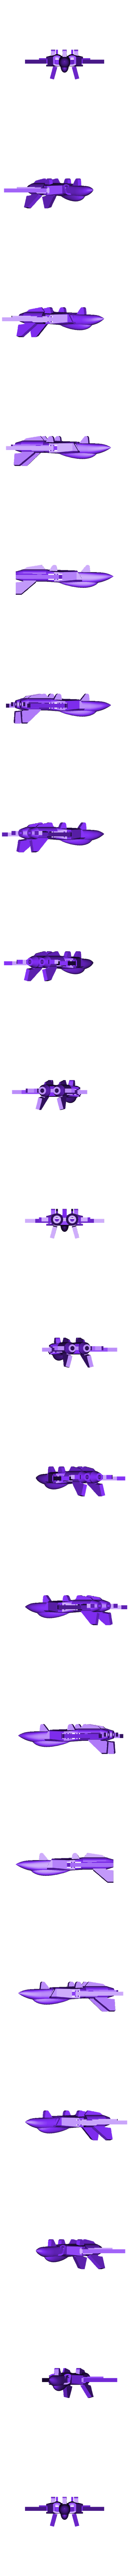 jet_fighter_hollow.stl Бесплатный STL файл Яйцо-сюрприз №6 - Крошечный реактивный истребитель・3D-печатный объект для загрузки, agepbiz